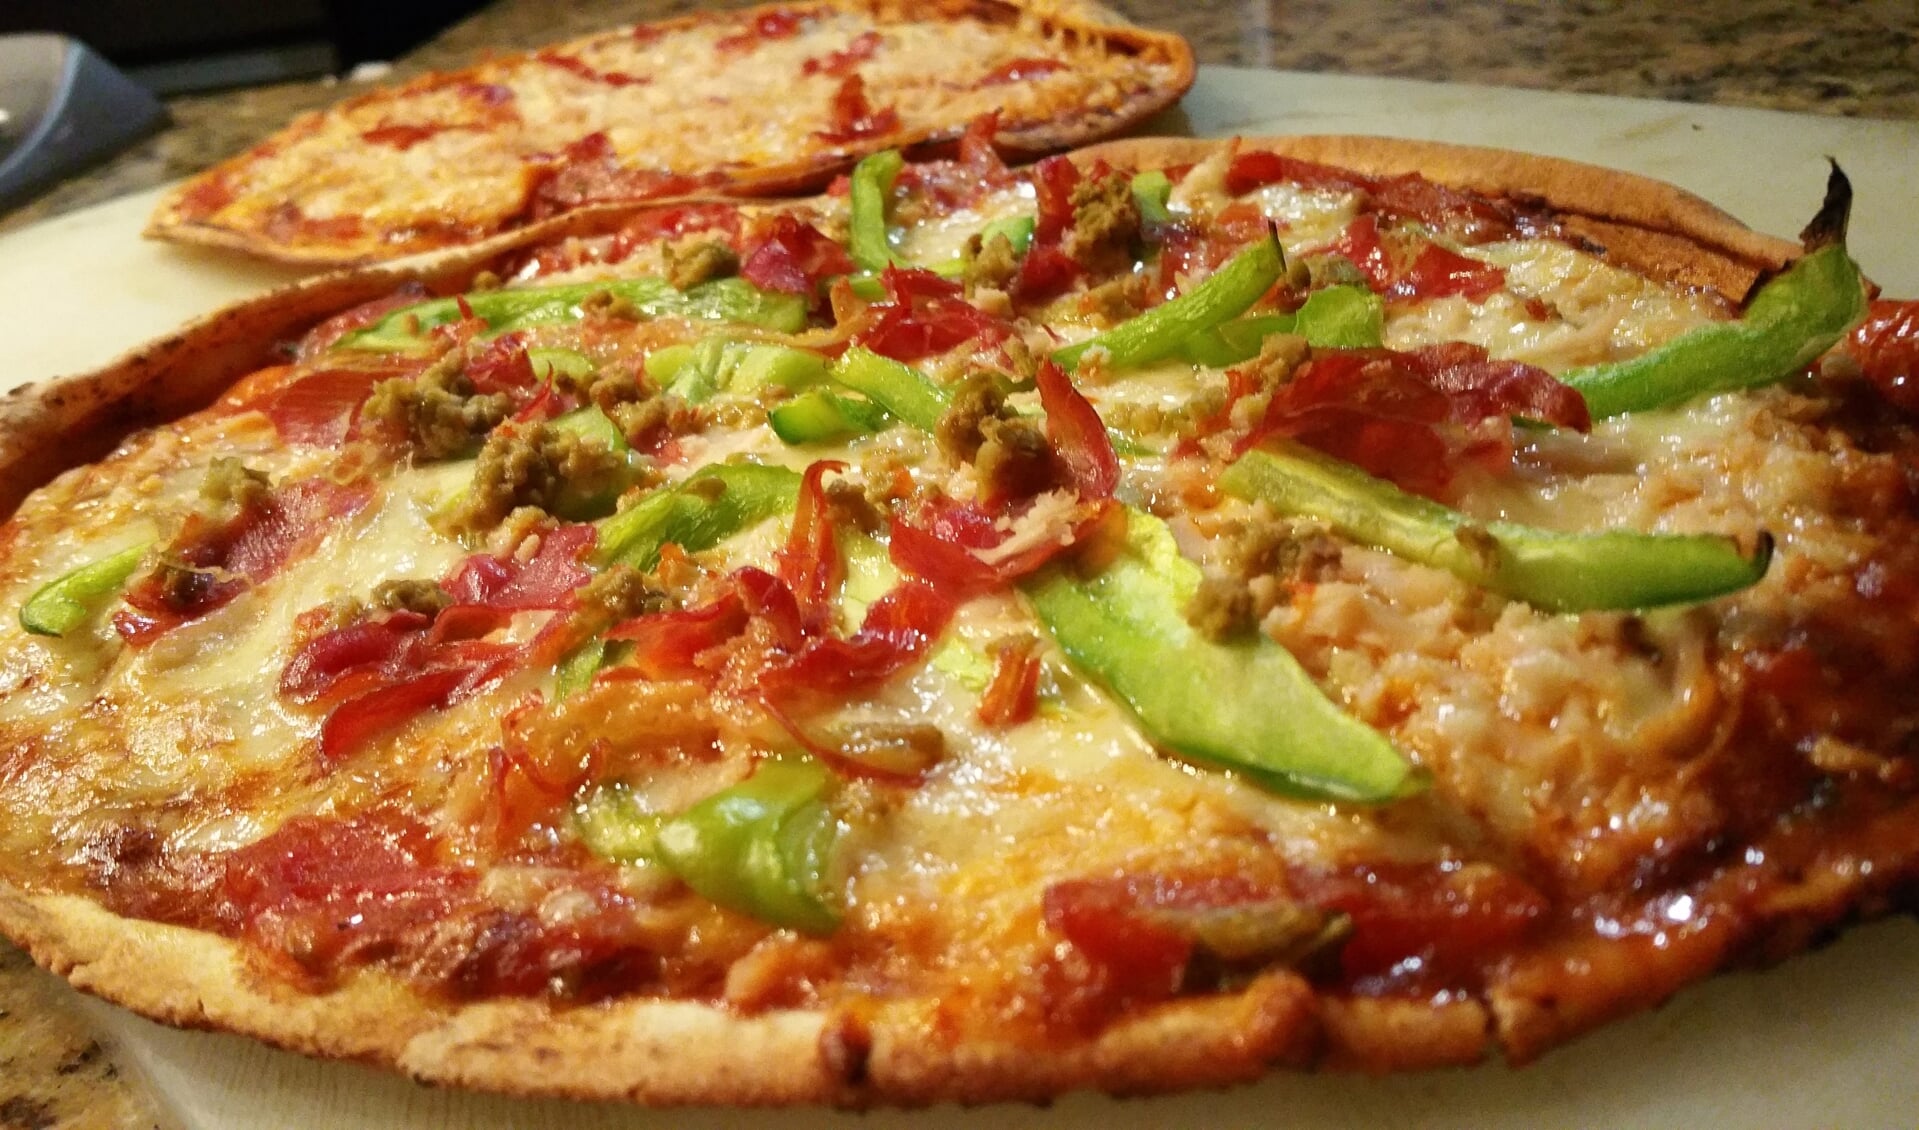 Ook verse gemaakte authentieke pizza’s staan straks op het menu van de vernieuwde Wereldkeuken Westzaan.